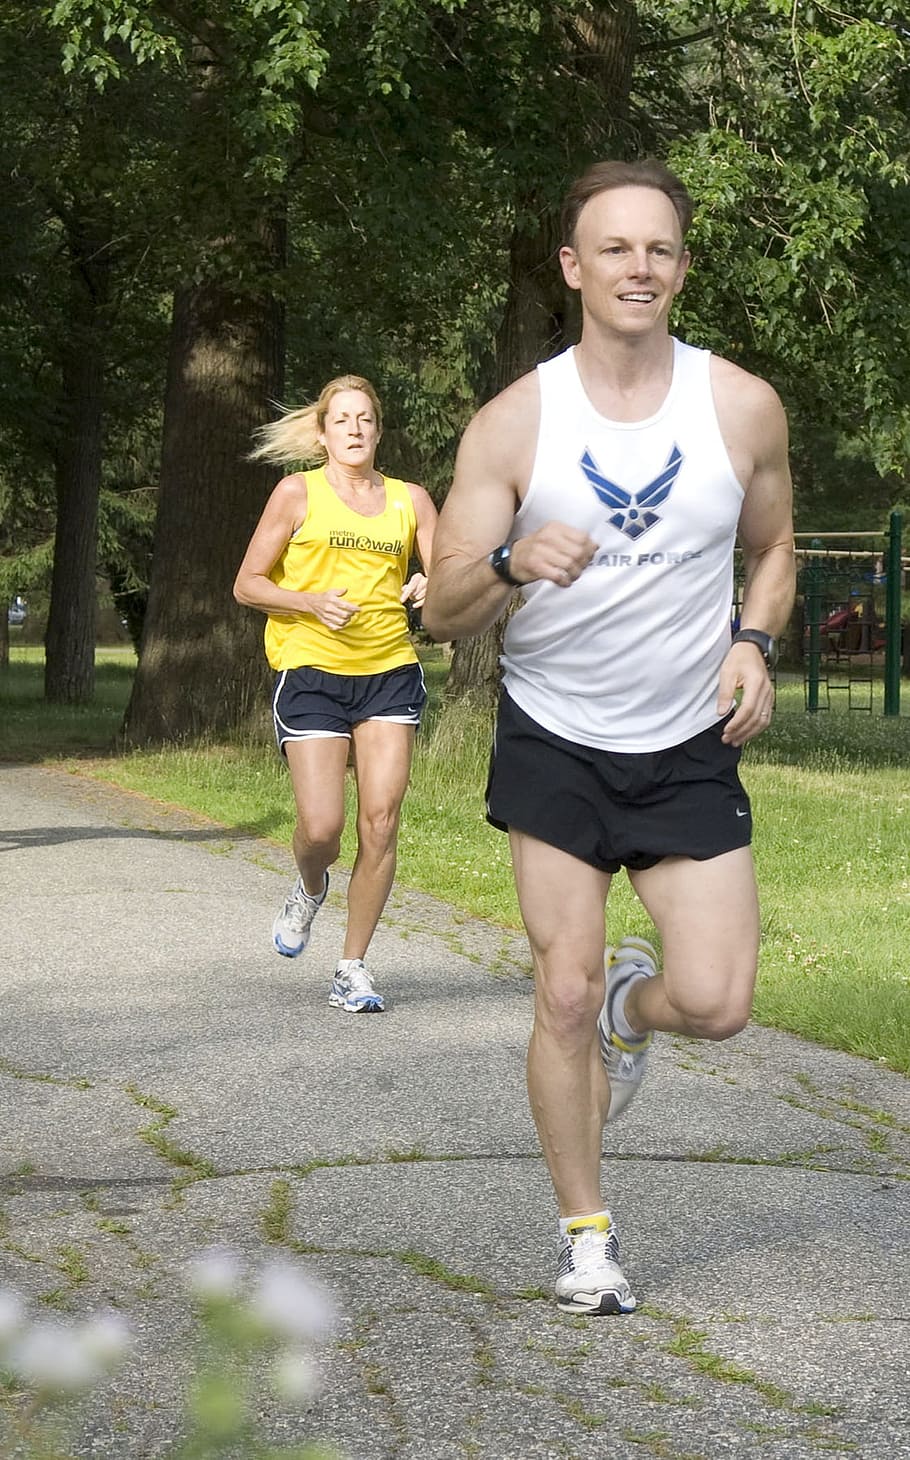 correr, trotar, ejercicio, salud, forma, estado físico, humano, actividad, dos personas, sonriente